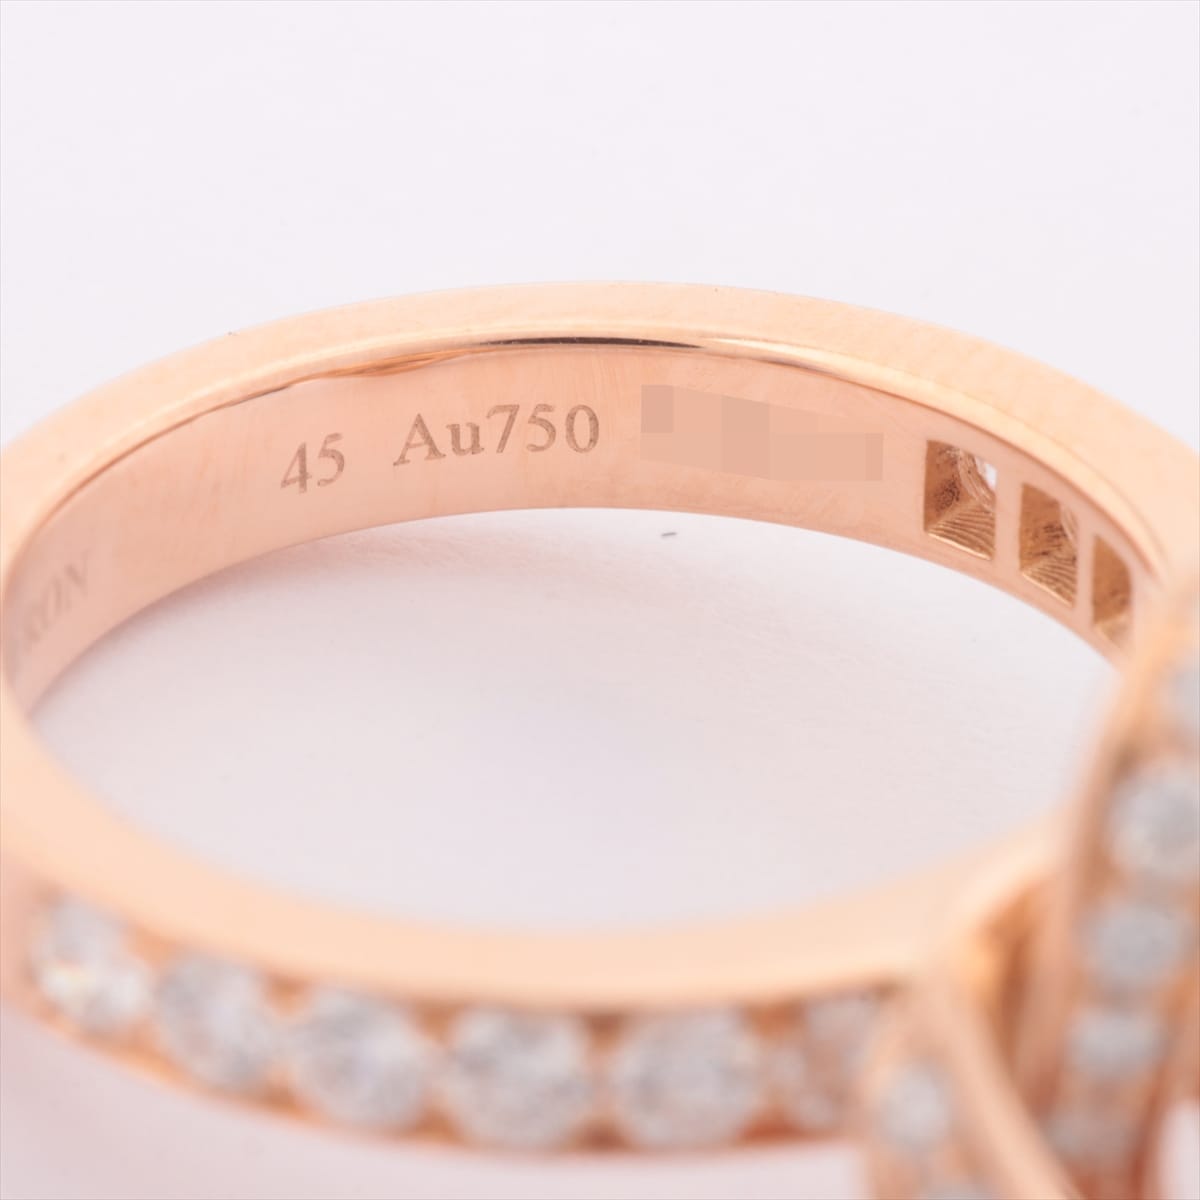 Boucheron Ava Pivoine diamond rings 750(PG) 4.4g 45 Diamond about 3 in diameter.51mm